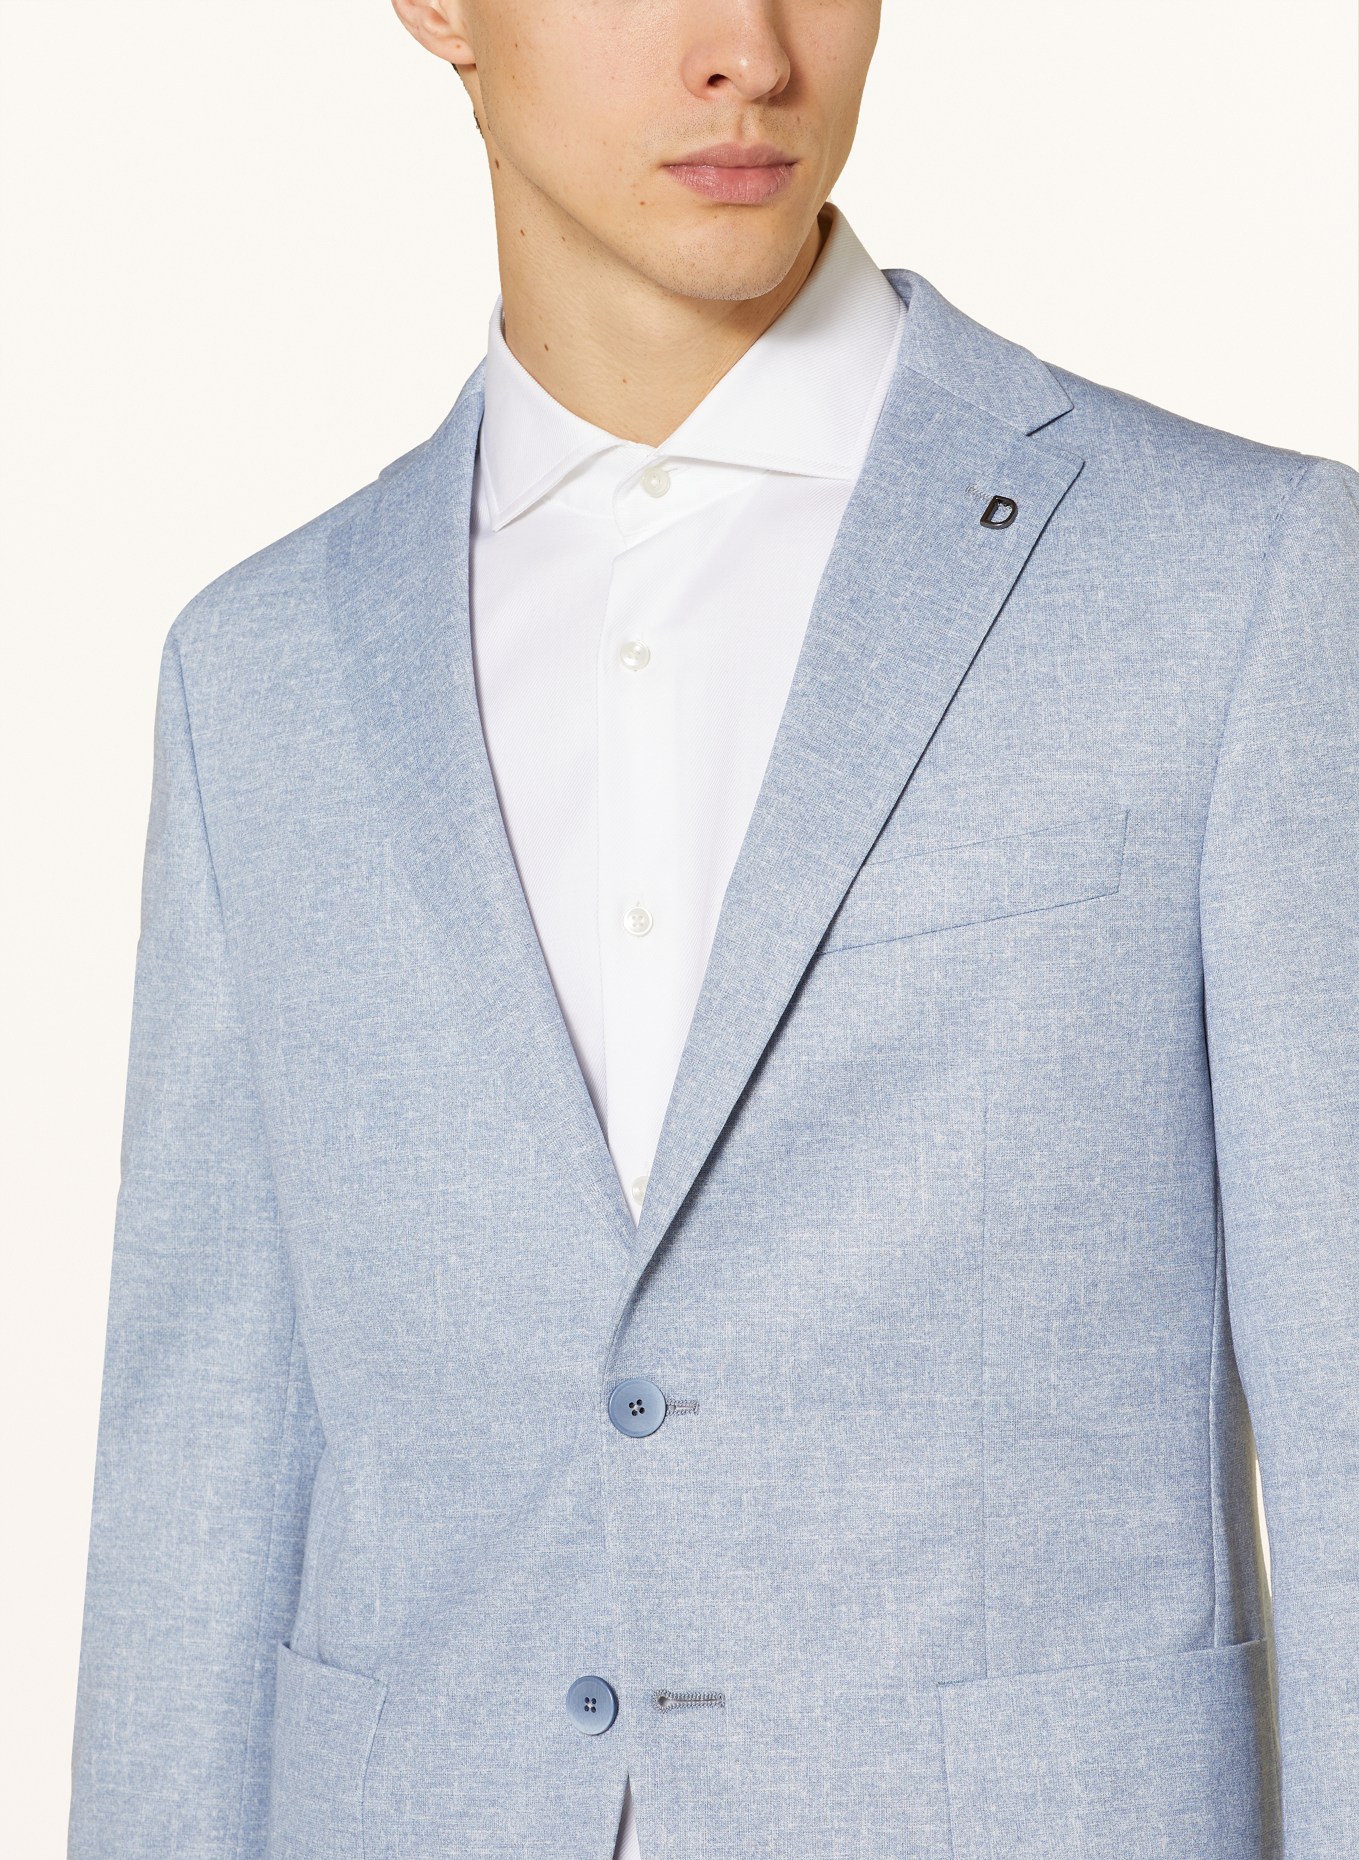 DIGEL Suit jacket EDWARD regular fit in jersey, Color: LIGHT BLUE (Image 5)